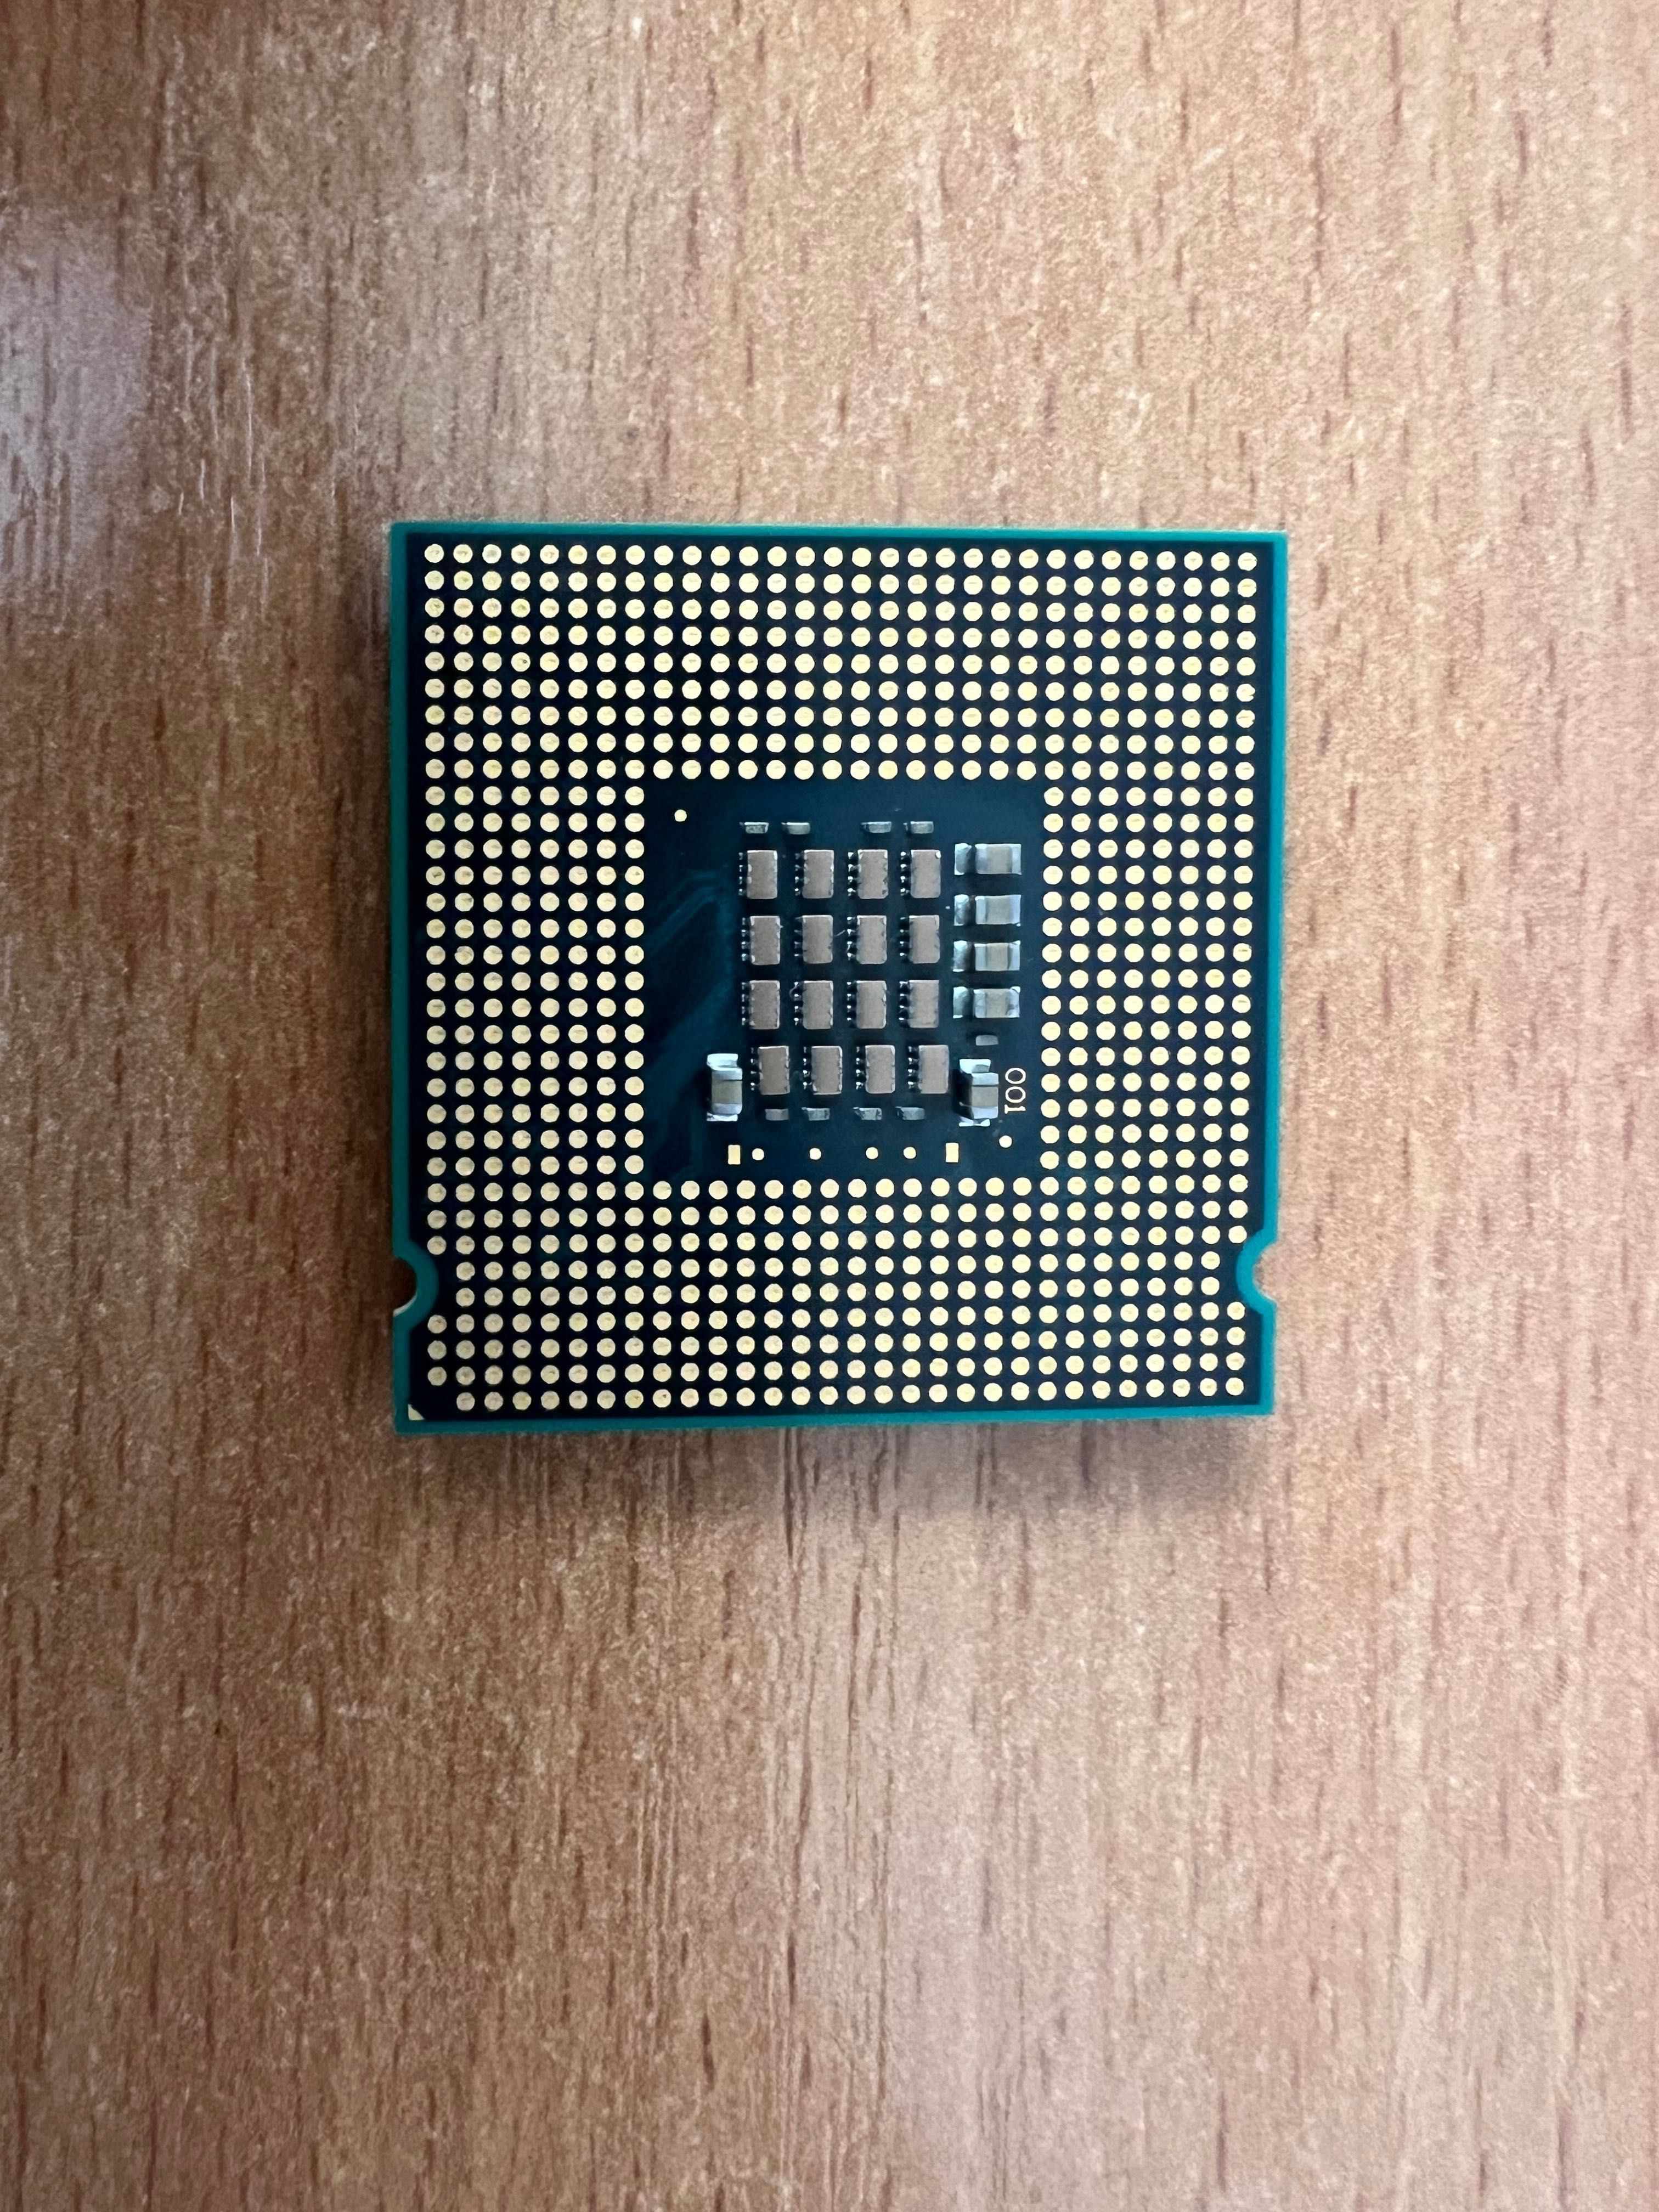 Intel Pentium 4 3.0 GHz